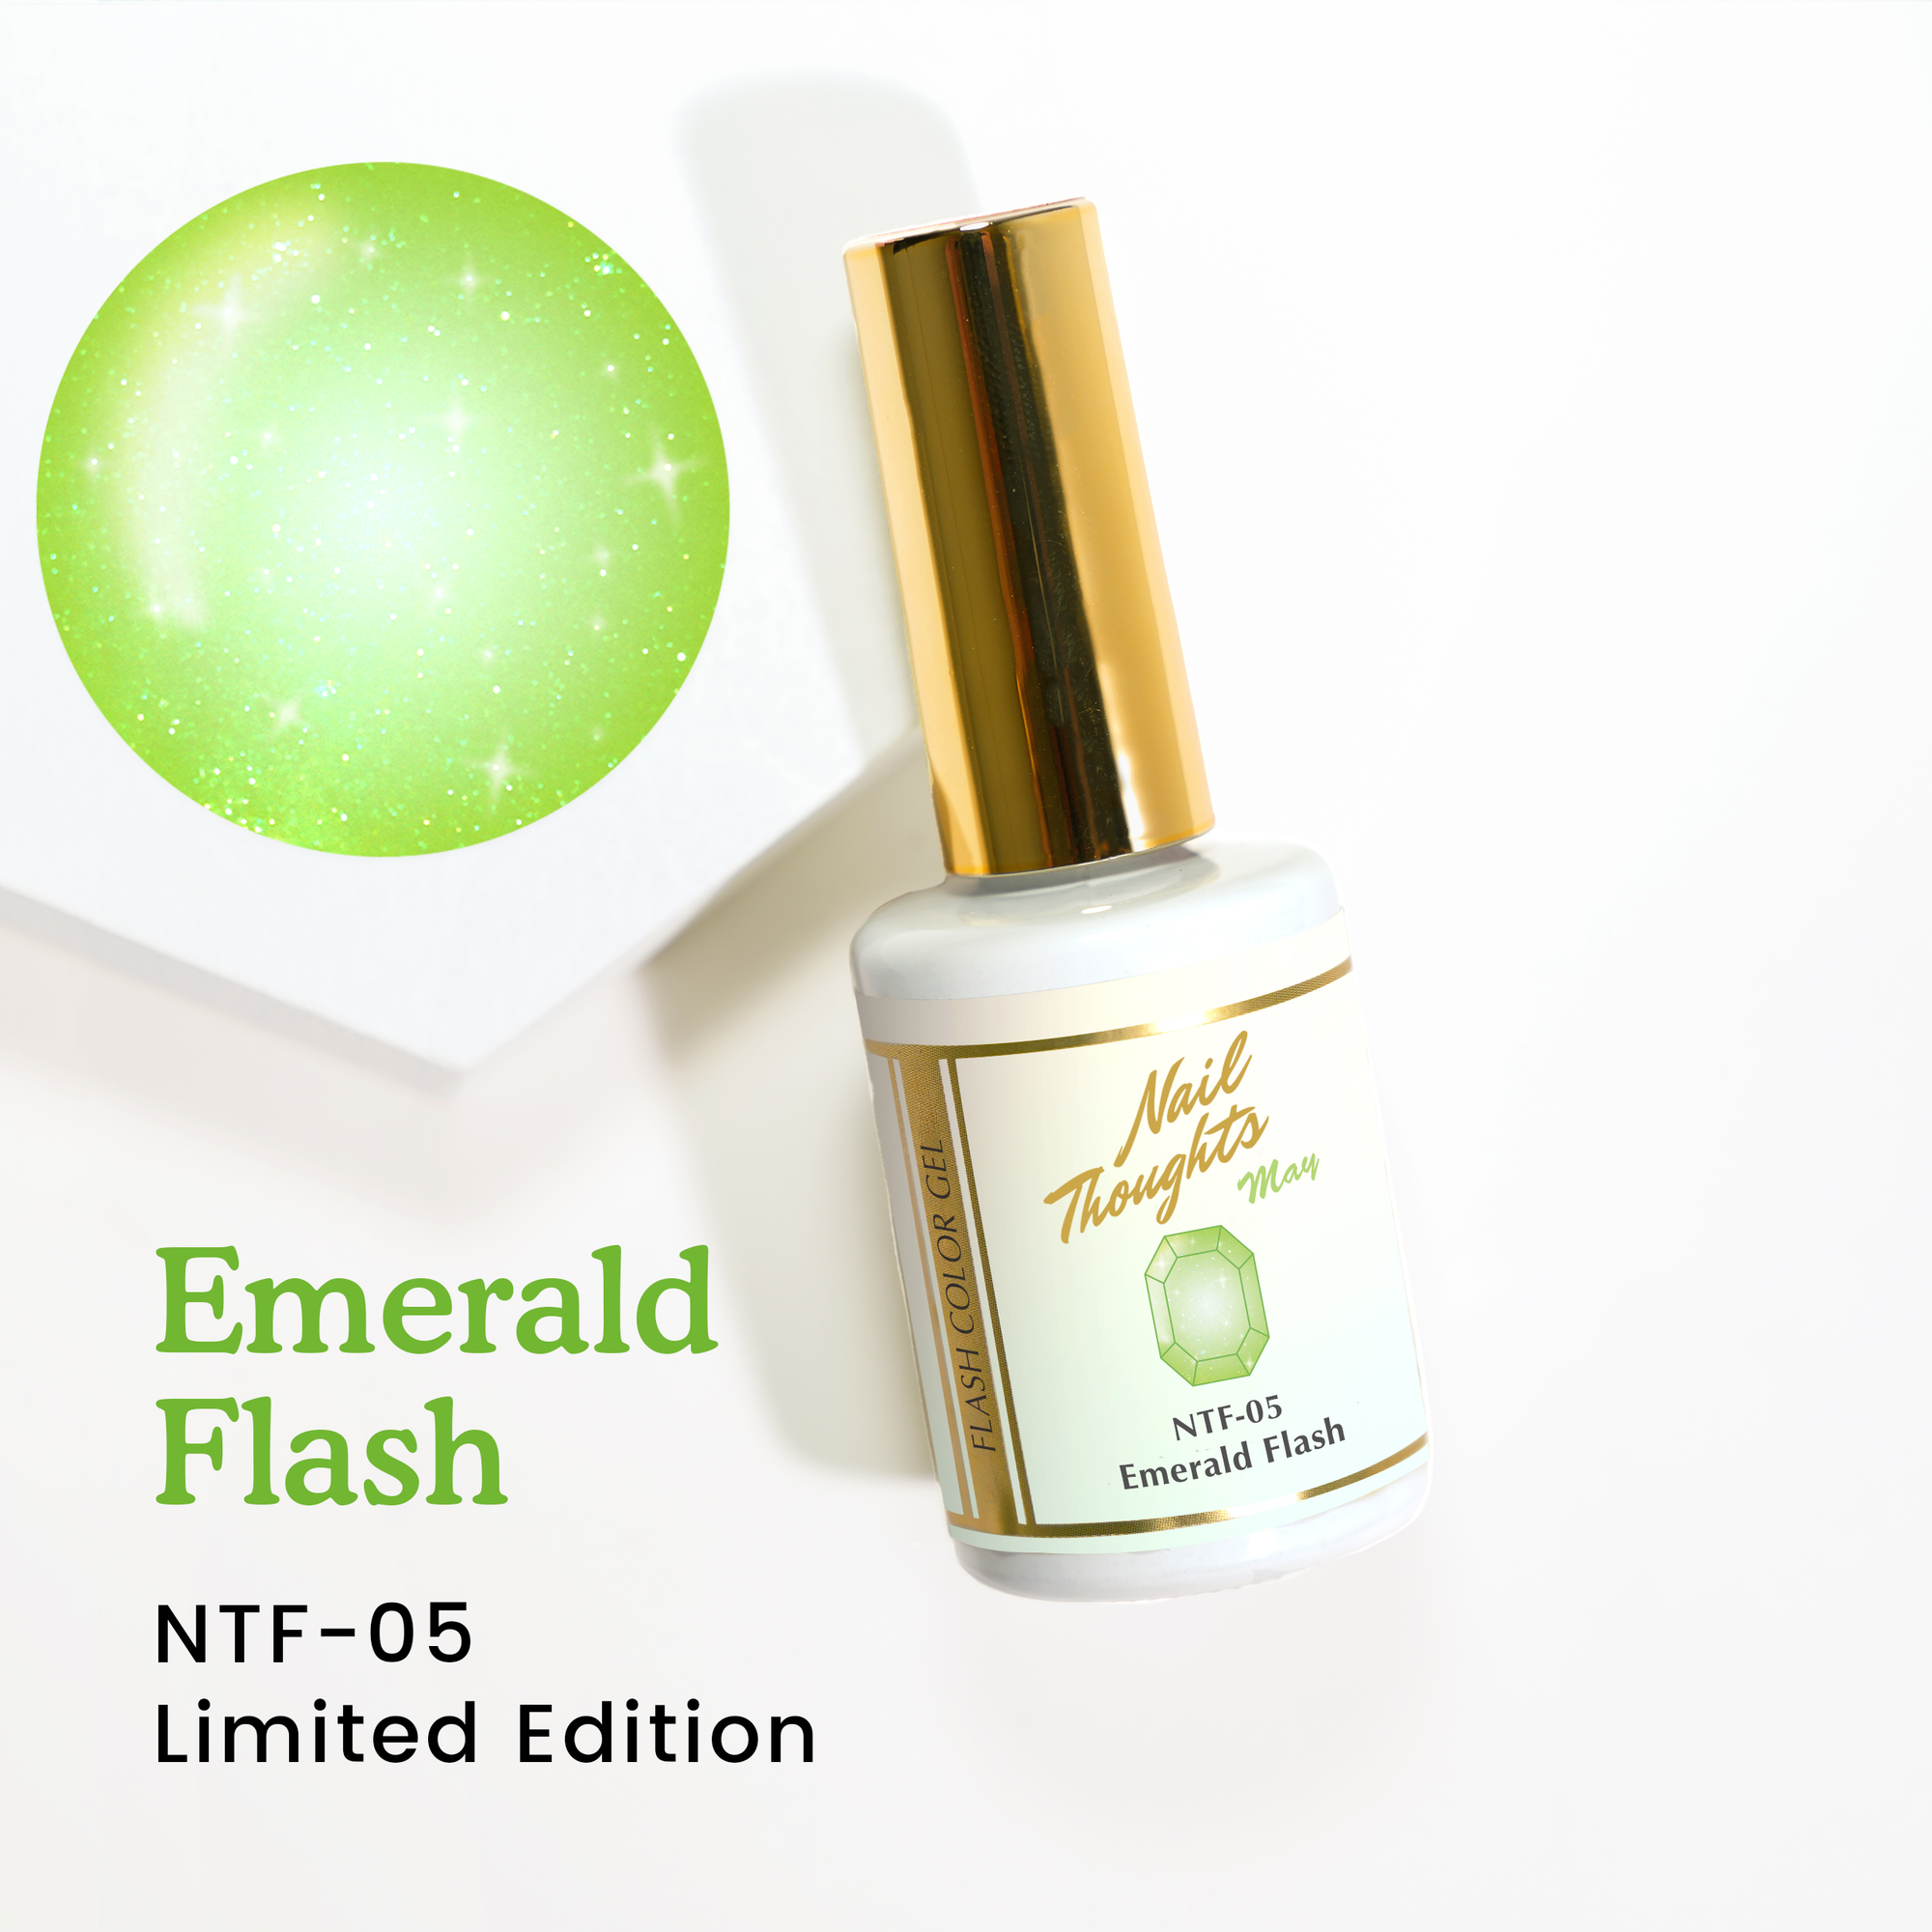 Emerald Flash NTF-05